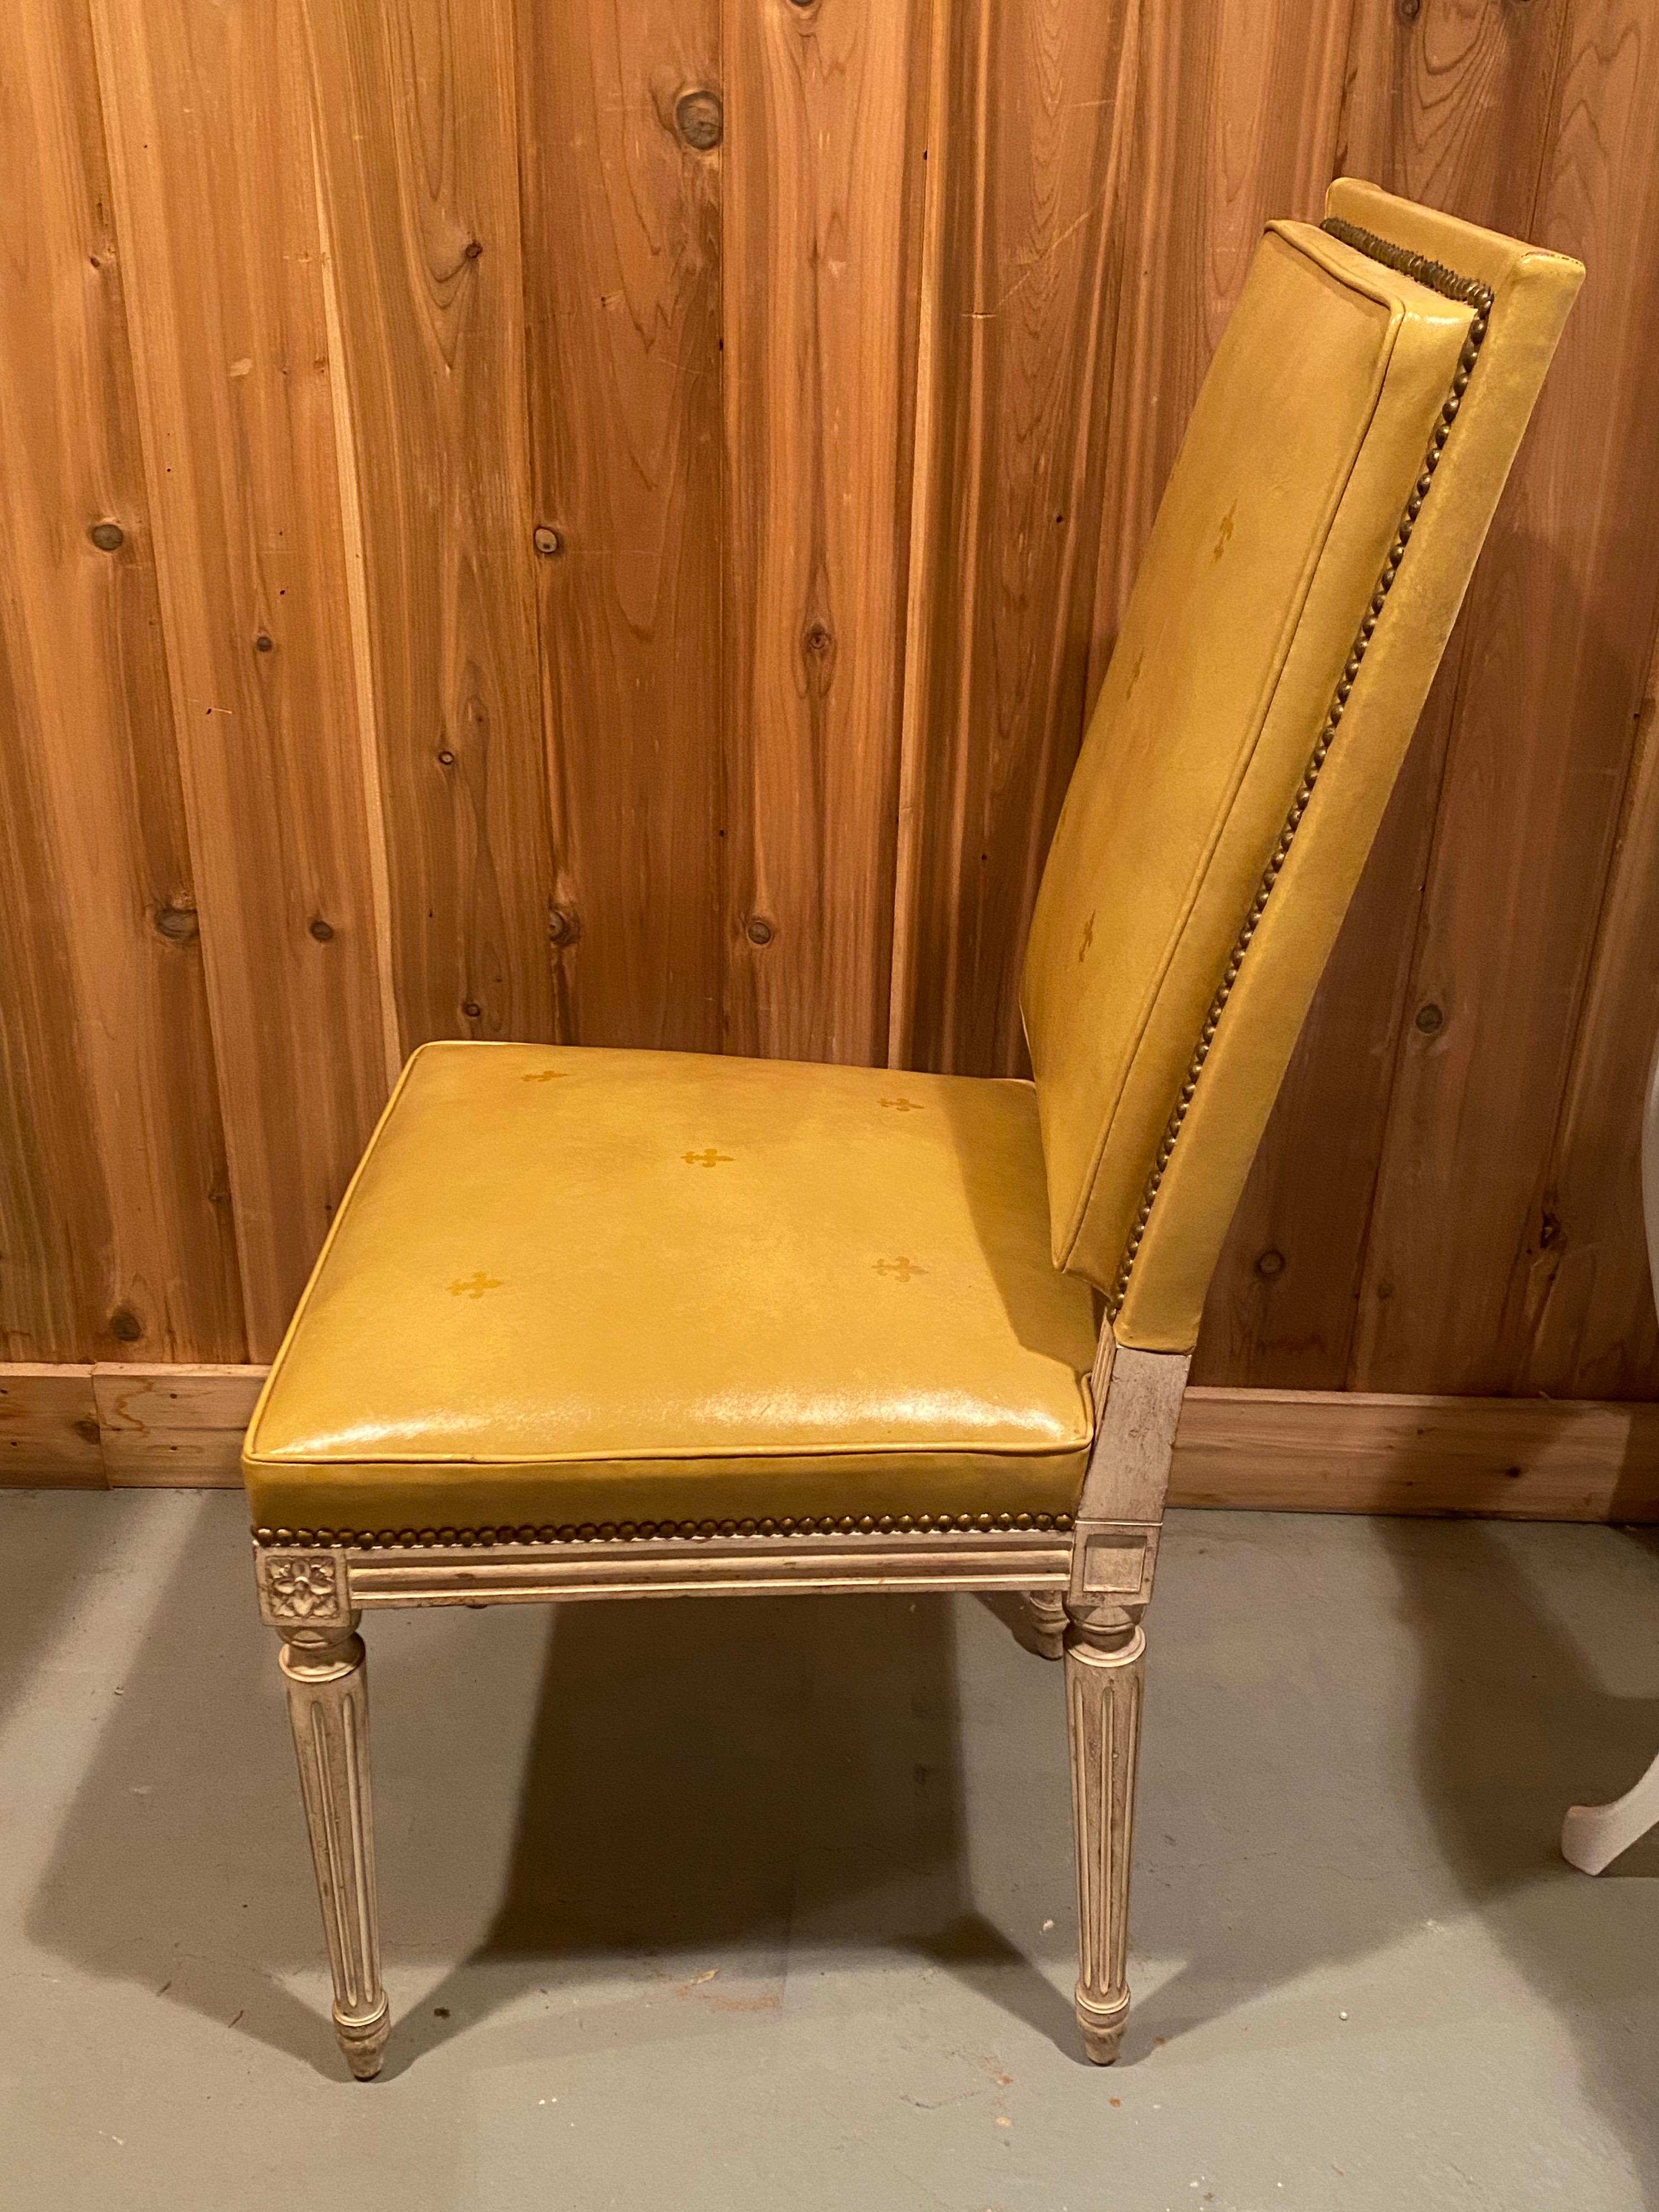 sechs ledergepolsterte Esszimmerstühle im Louis-XVI-Stil aus den 1920er Jahren von Fine Arts Furniture Inc. NYC. Schöne Esszimmerstühle, die mit gelbem Leder bezogen sind, das sowohl die Vorder- und Rückseite der Stühle als auch den Sitz umhüllt.